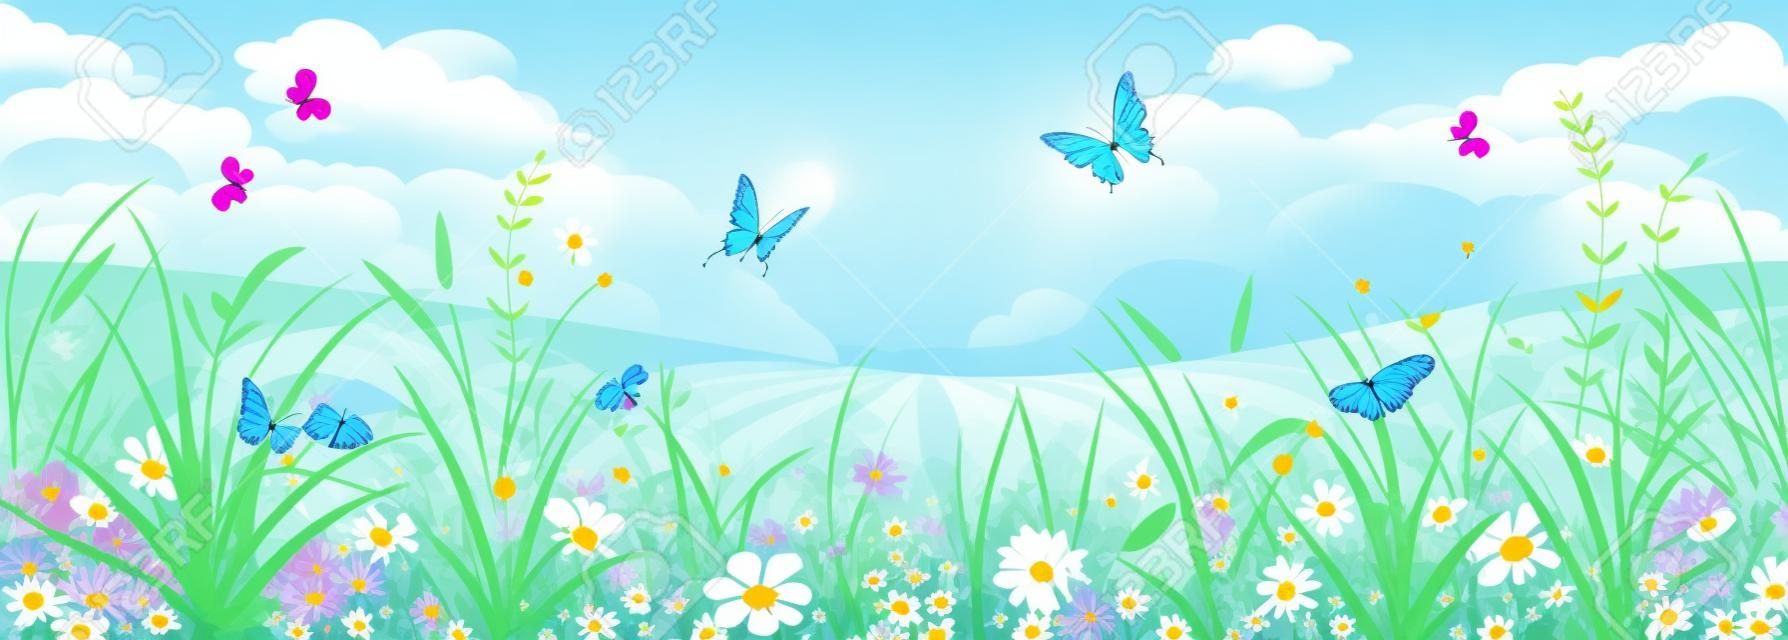 Bloemen zomer of voorjaar landschap, weide met bloemen, blauwe lucht en vlinders